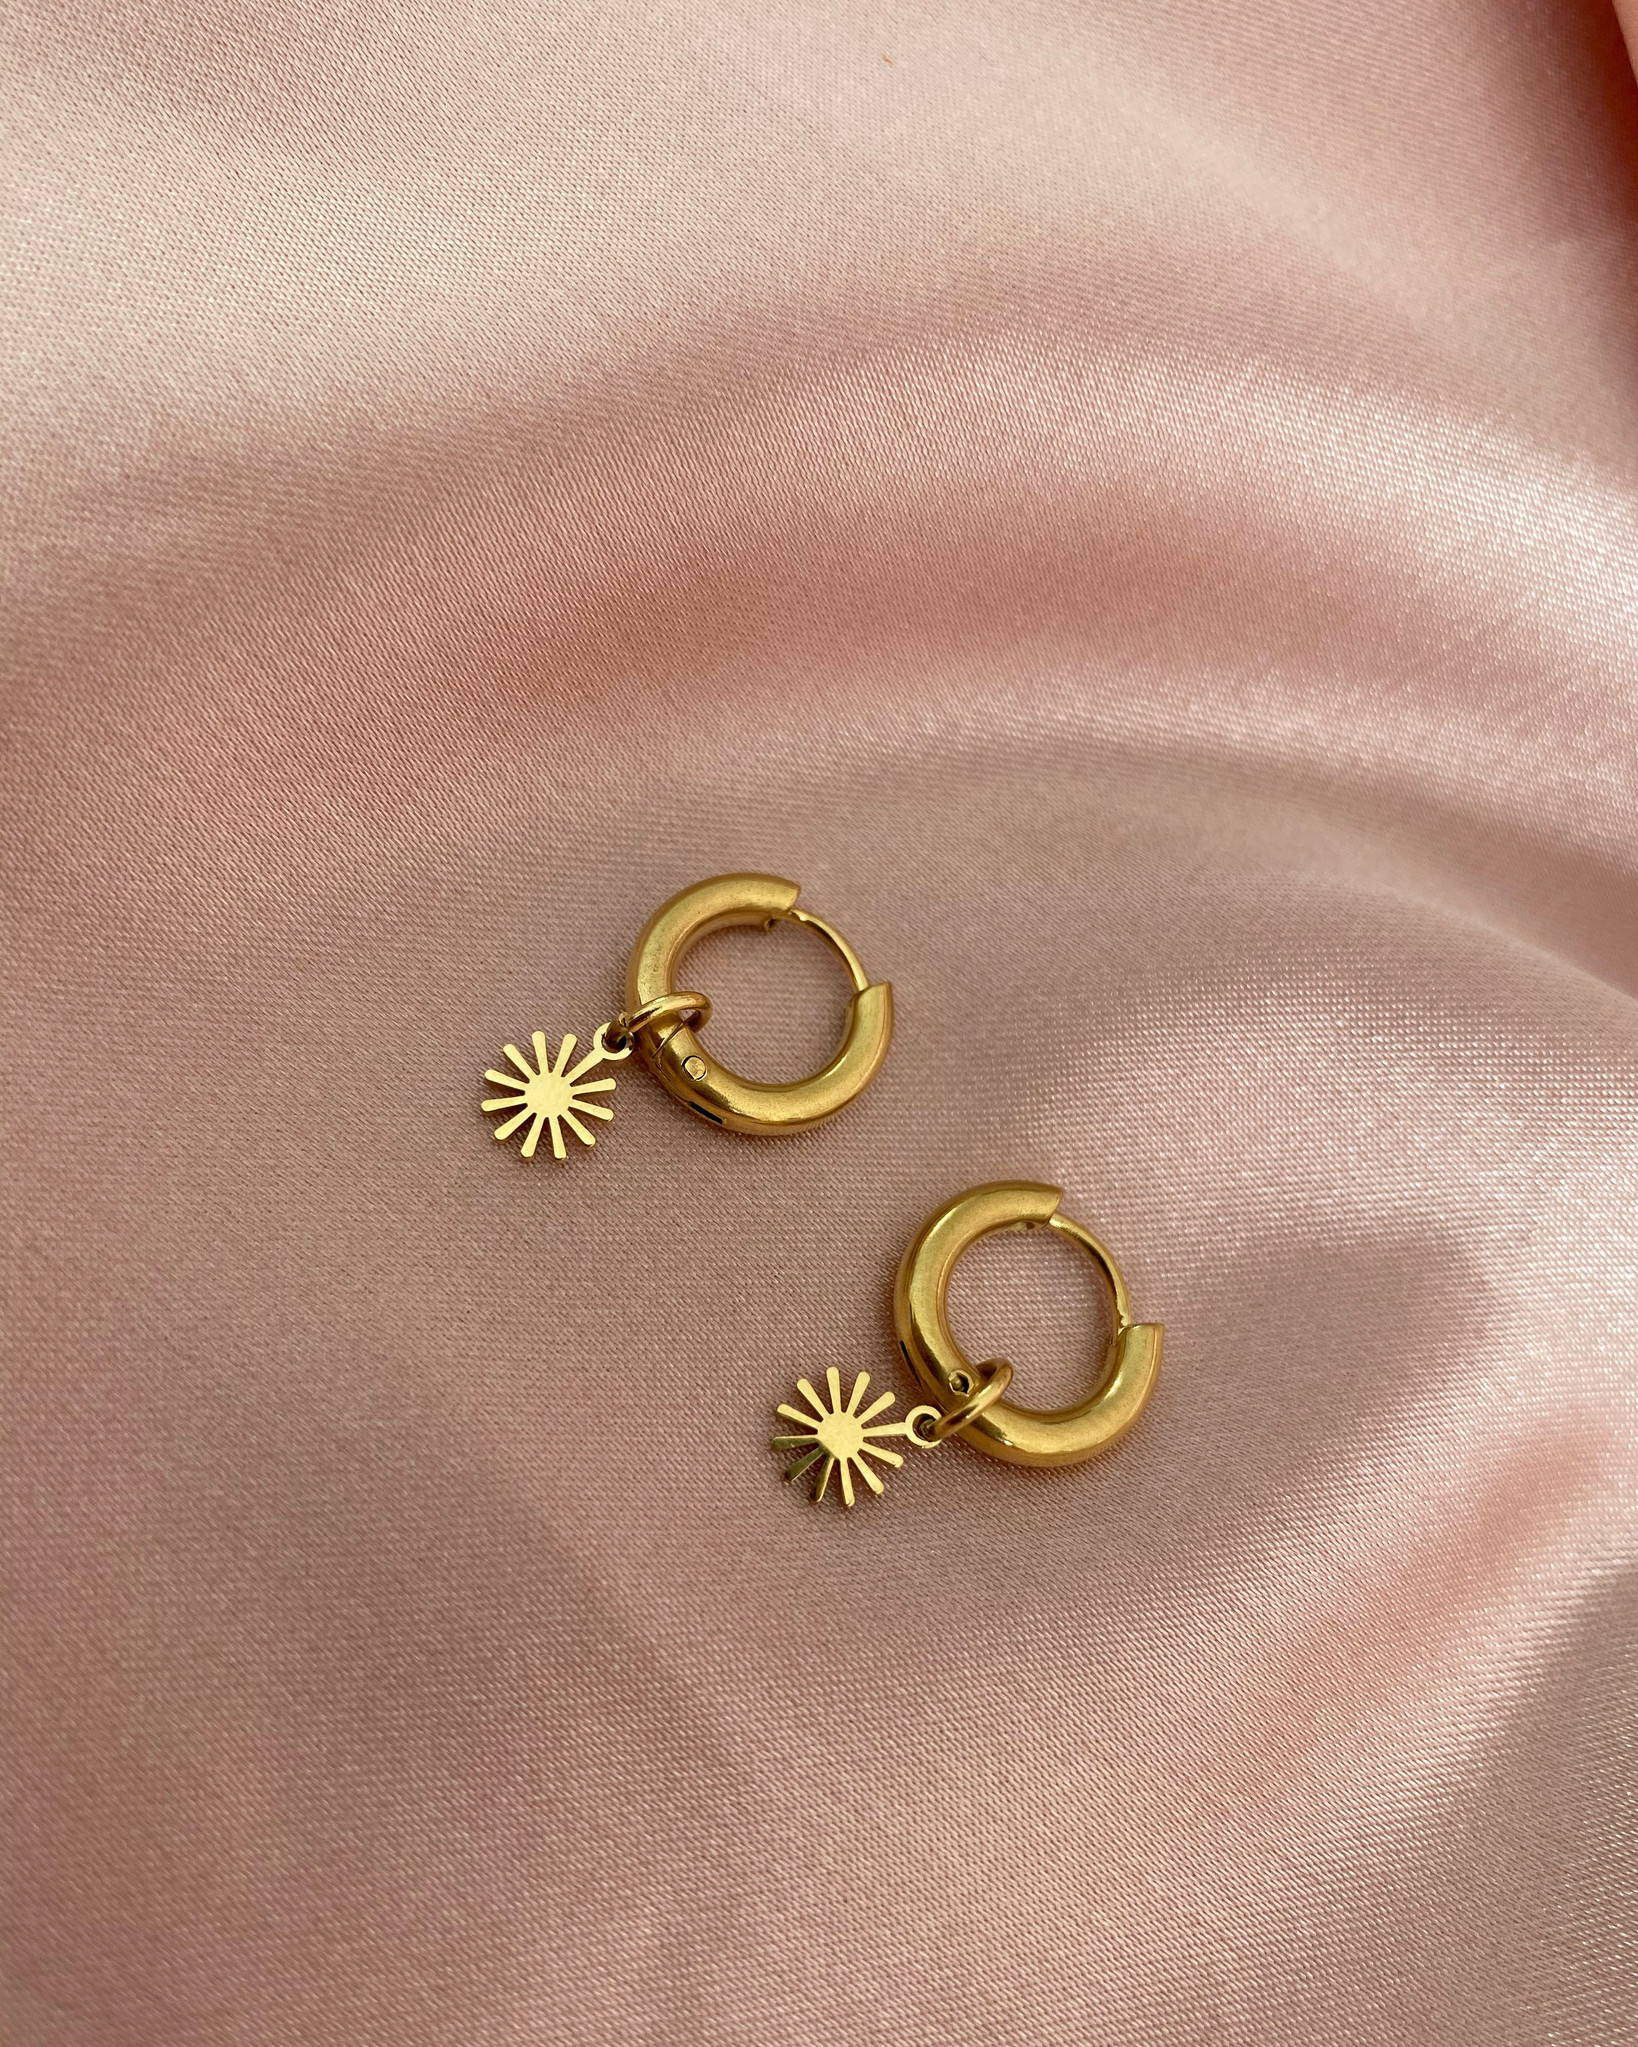 Raffinaderij Middeleeuws Los Gold Stainless Steel 'Sweet Sun' Earrings - Notbranded